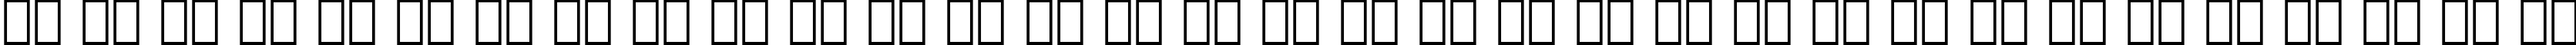 Пример написания русского алфавита шрифтом Aachen Bold BT